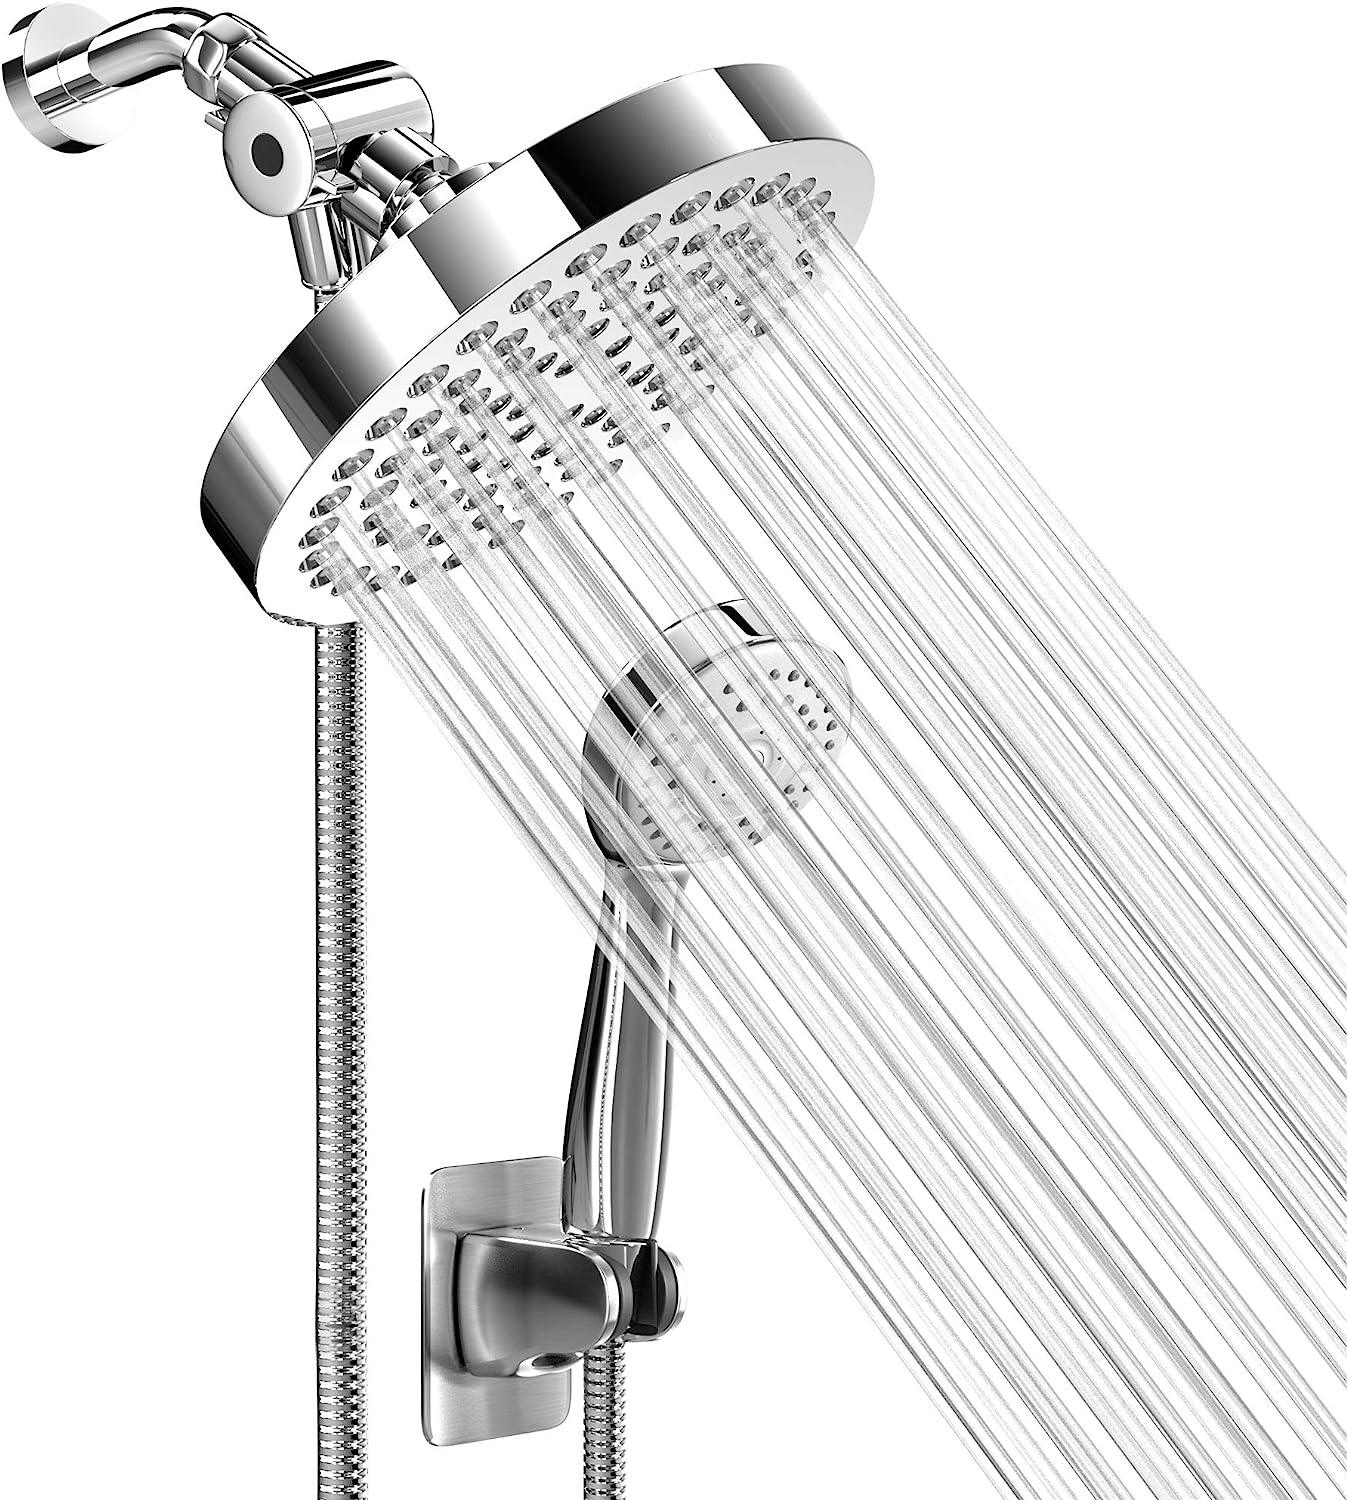 Cabezal de ducha de alta presión y ducha manual con manguera de 70 pul -  VIRTUAL MUEBLES